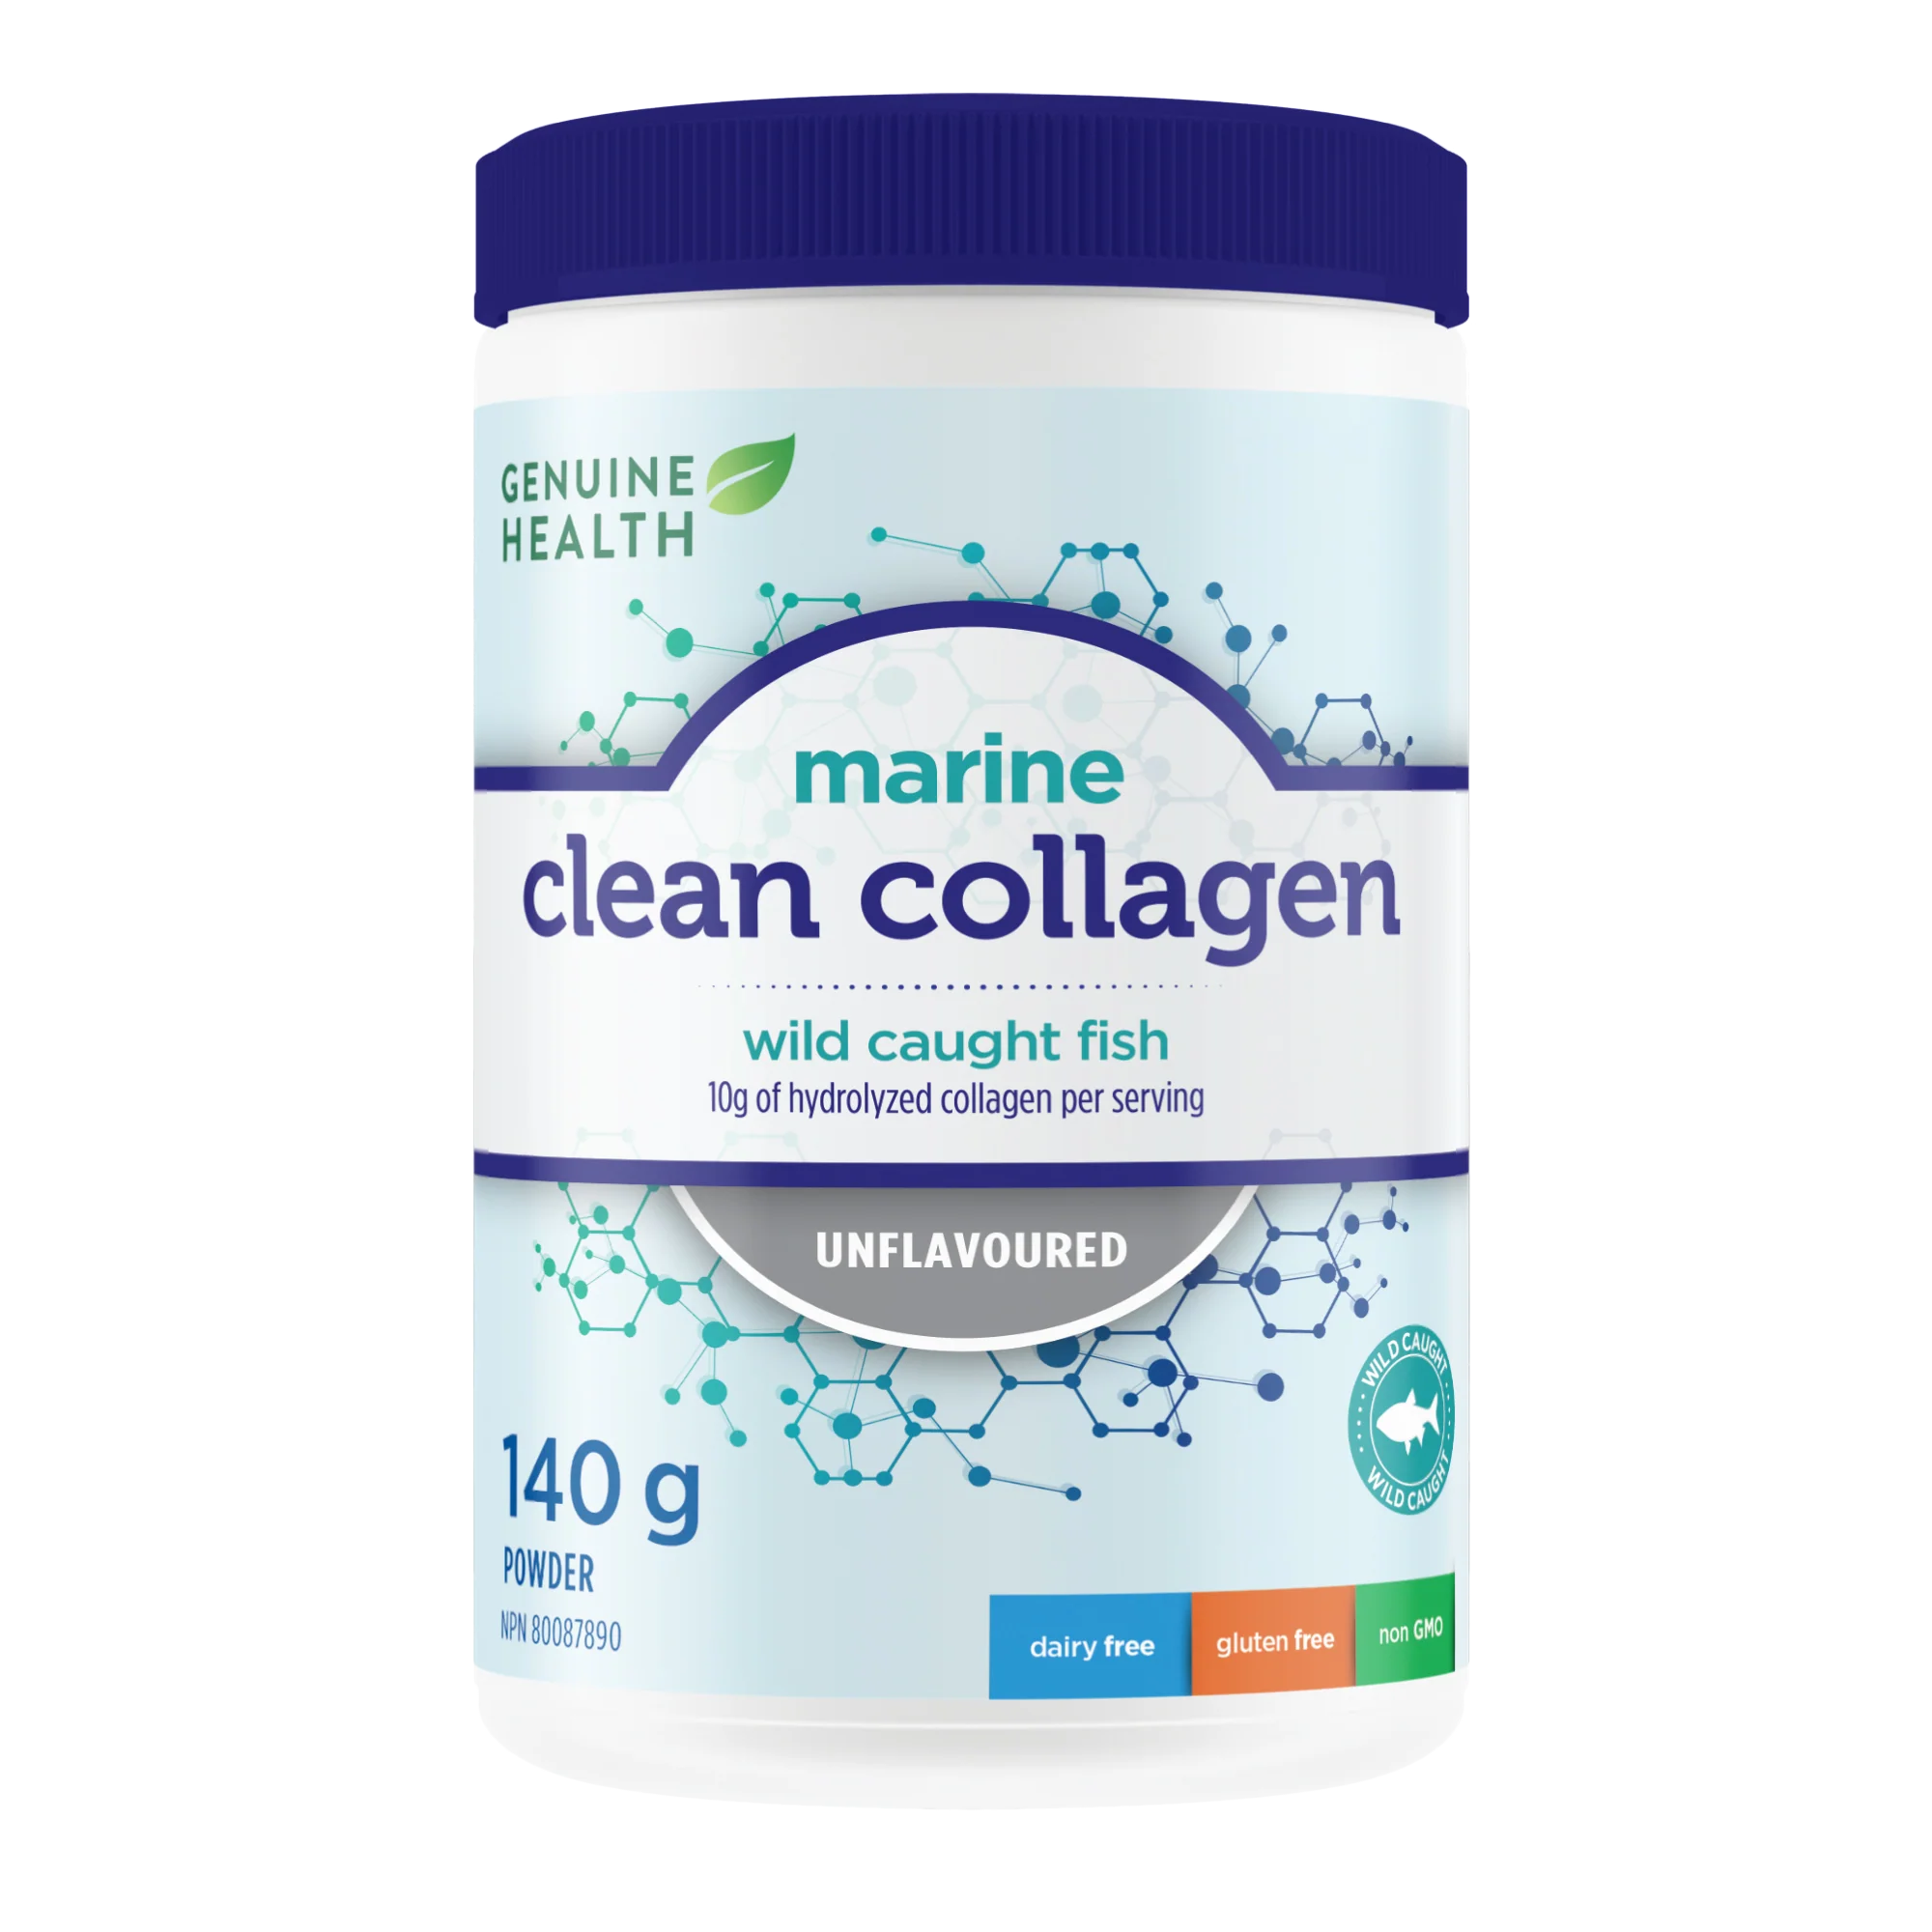 Genuine Health Marine Collagen Unflavoured 140g